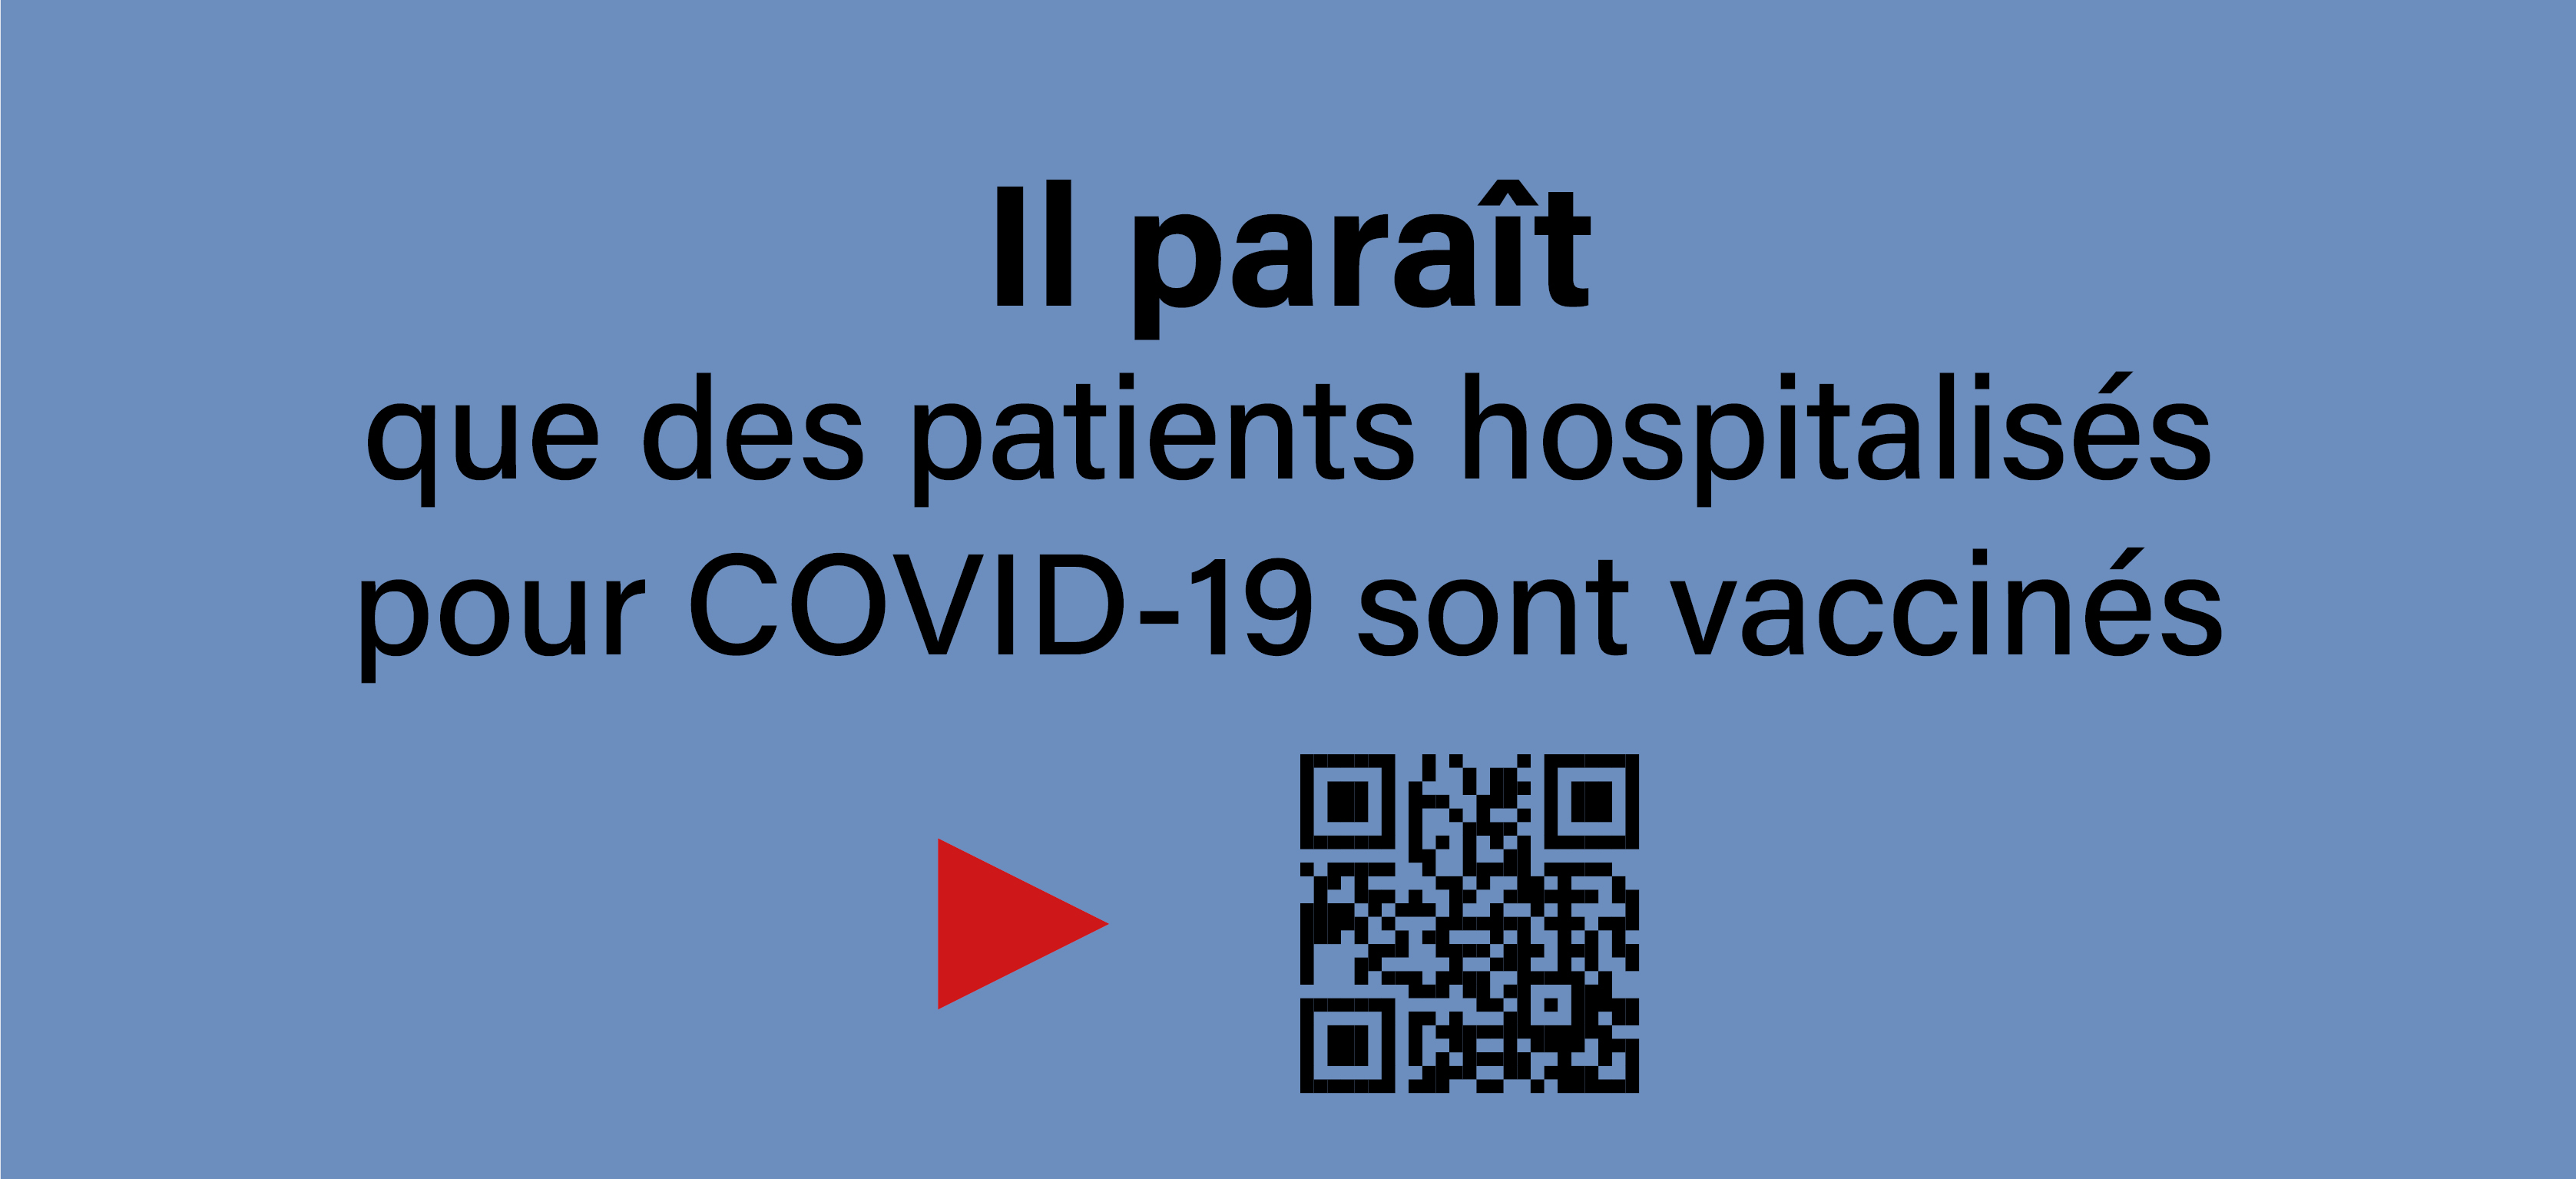 Il paraît que des patients hospitalisés pour COVID-19 sont vaccinés.